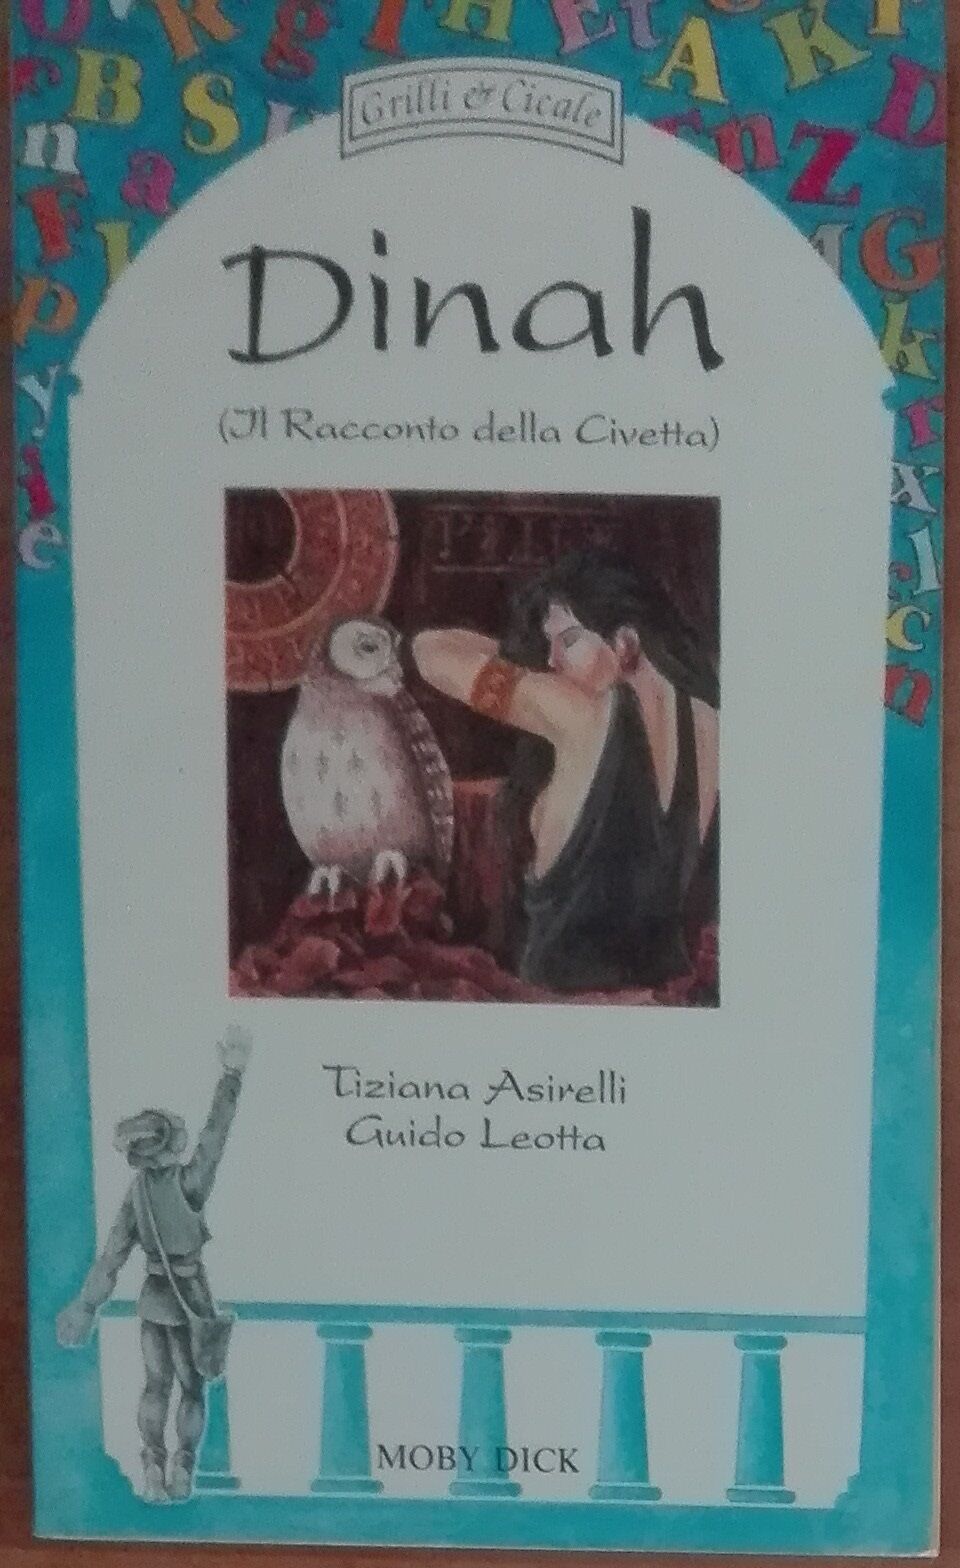 Dinah - Tiziana Asirelli, Guido Leotta - Mody Dick,1993 - A